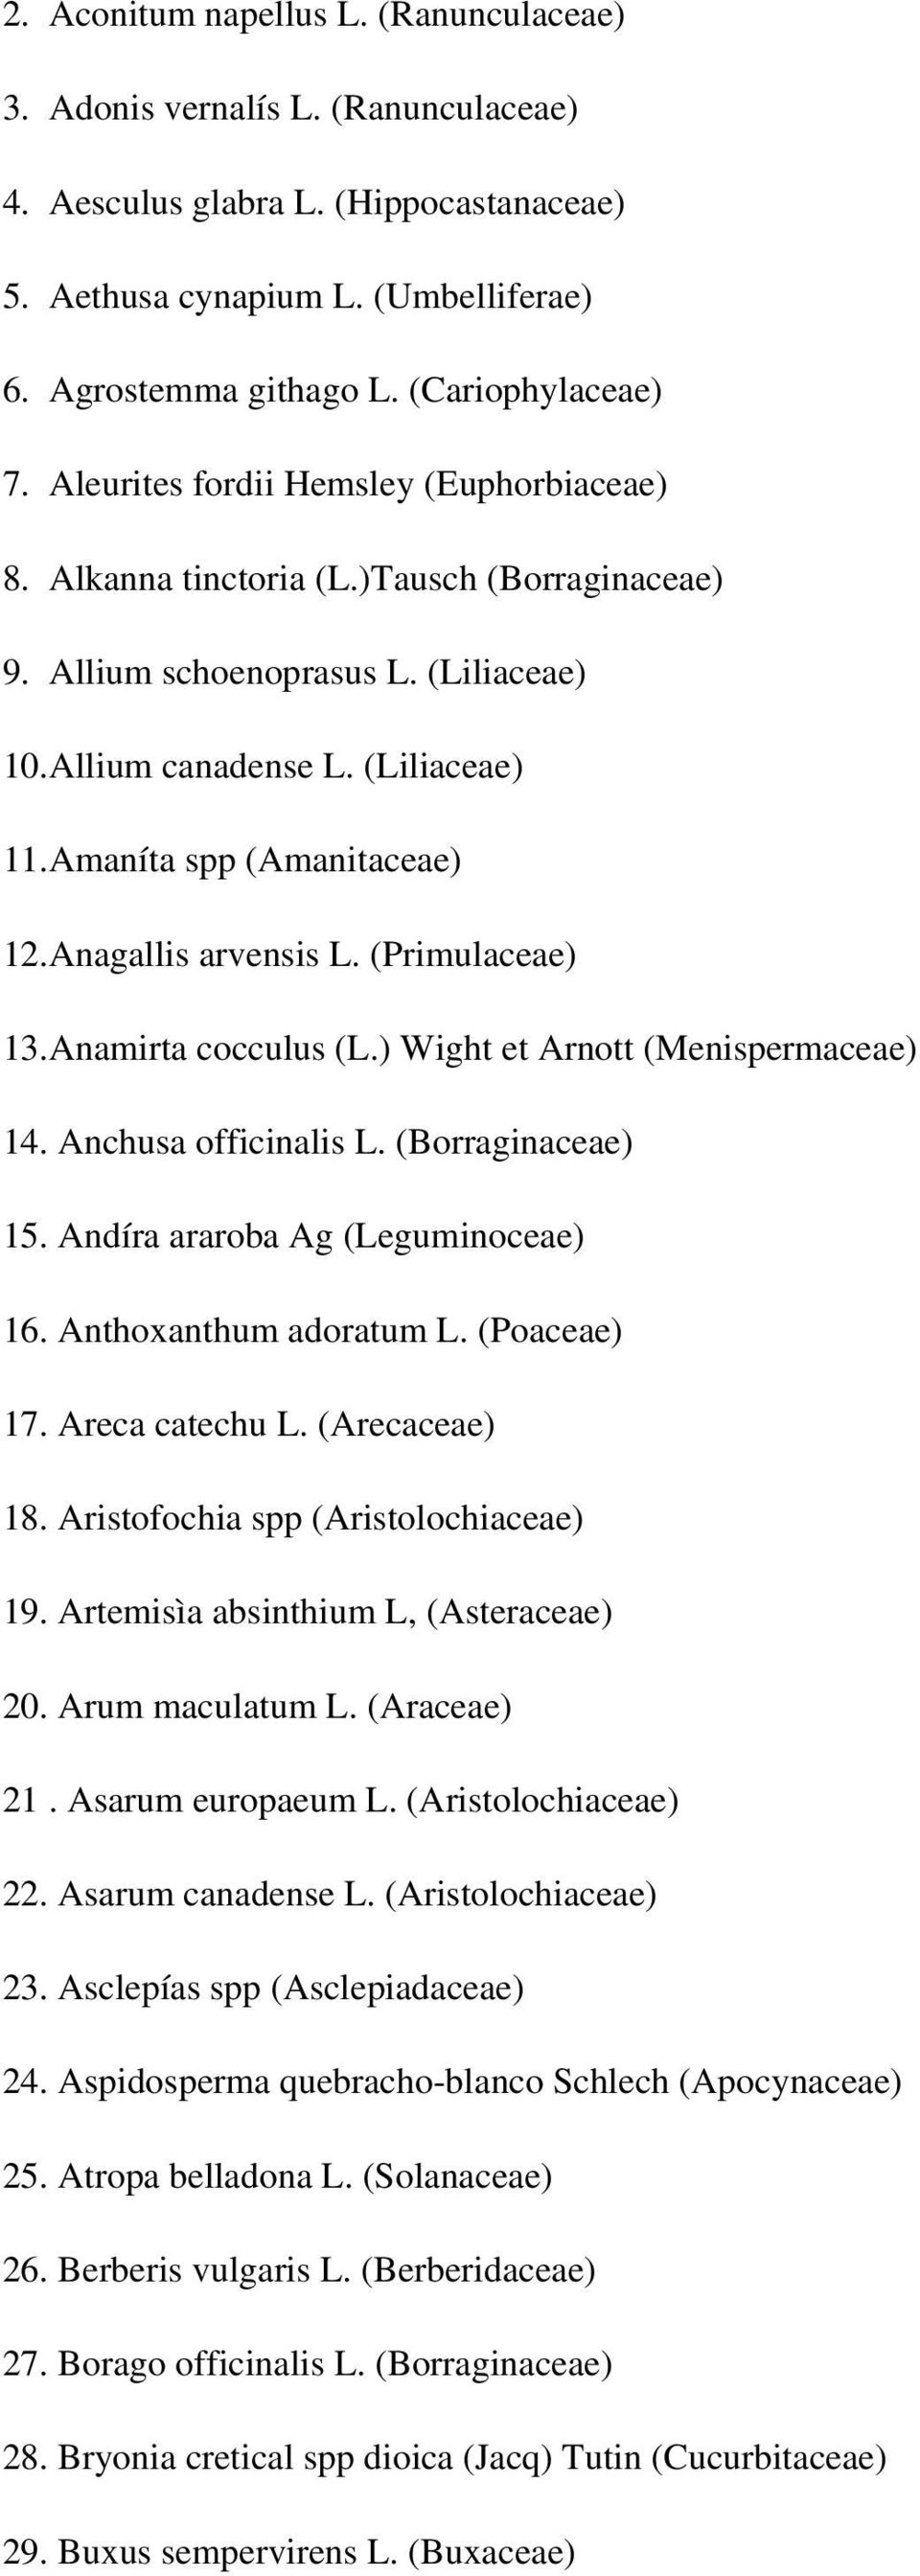 Amaníta spp (Amanitaceae) 12.Anagallis arvensis L. (Primulaceae) 13.Anamirta cocculus (L.) Wight et Arnott (Menispermaceae) 14. Anchusa officinalis L. (Borraginaceae) 15.